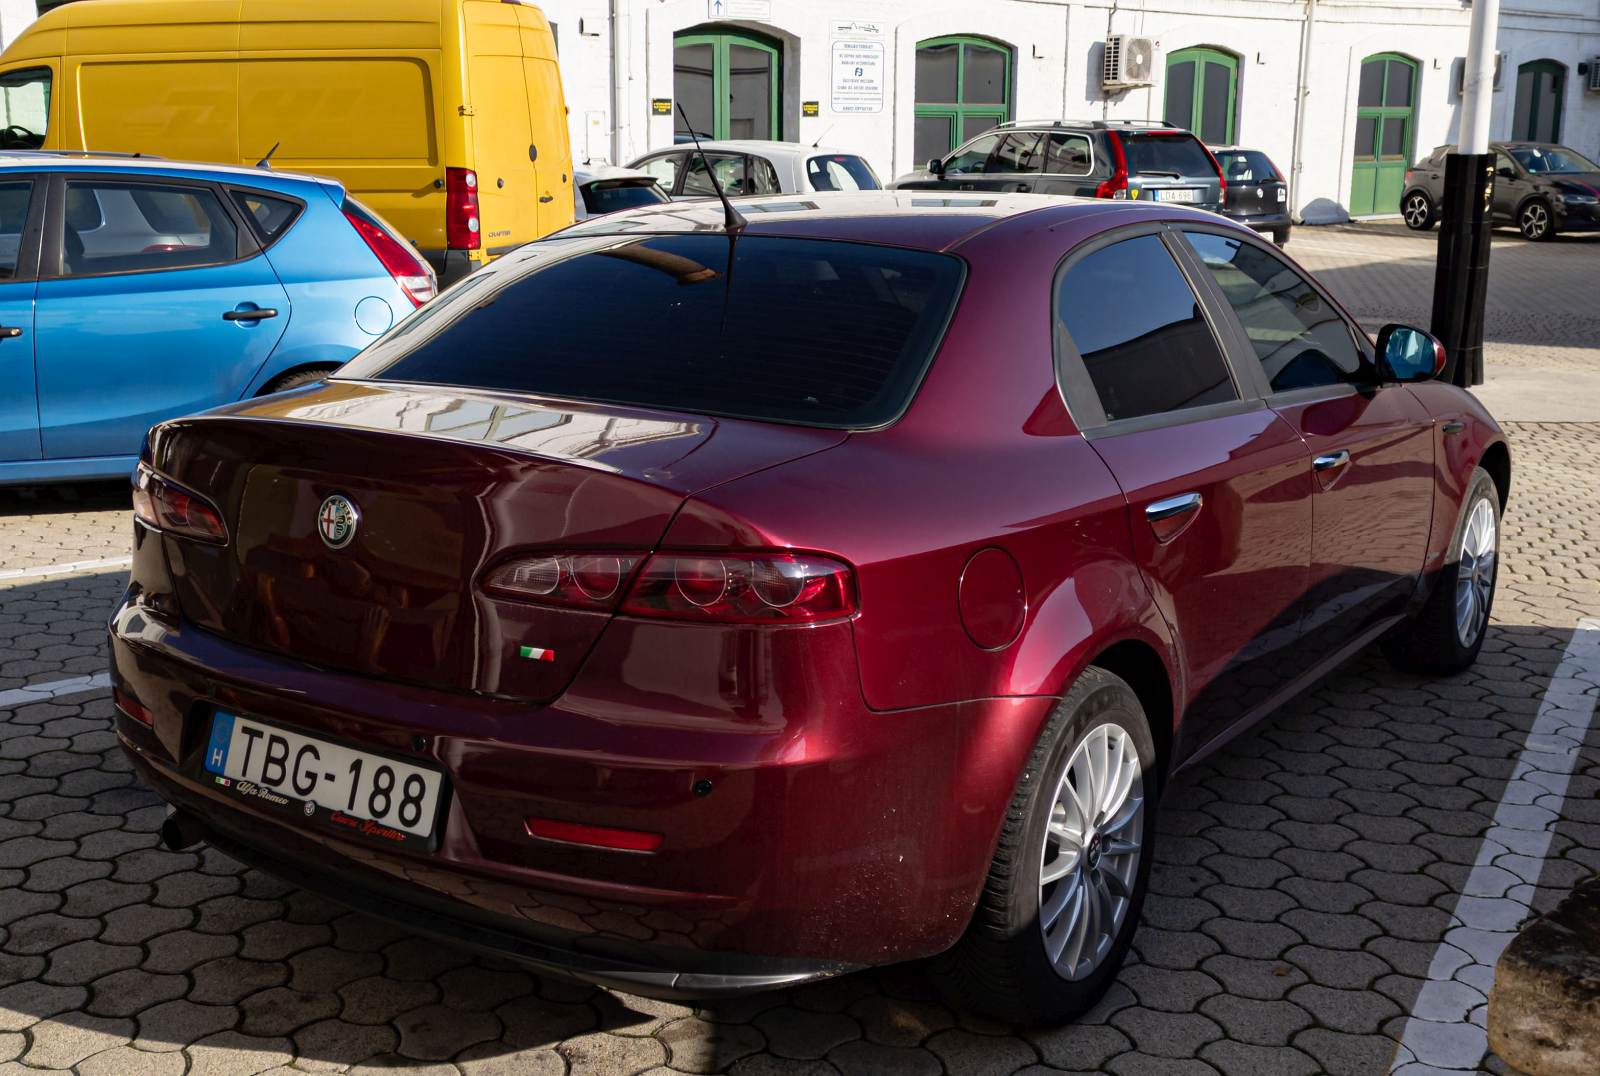 Rückansicht: Alfa-Romeo 159 in der Farbe Rosso Rubino. Interessant wie unterschiedlich diese farbe sich in direkte Sonnensein und in Streulich aussieht. Foto: Oktober, 2022.